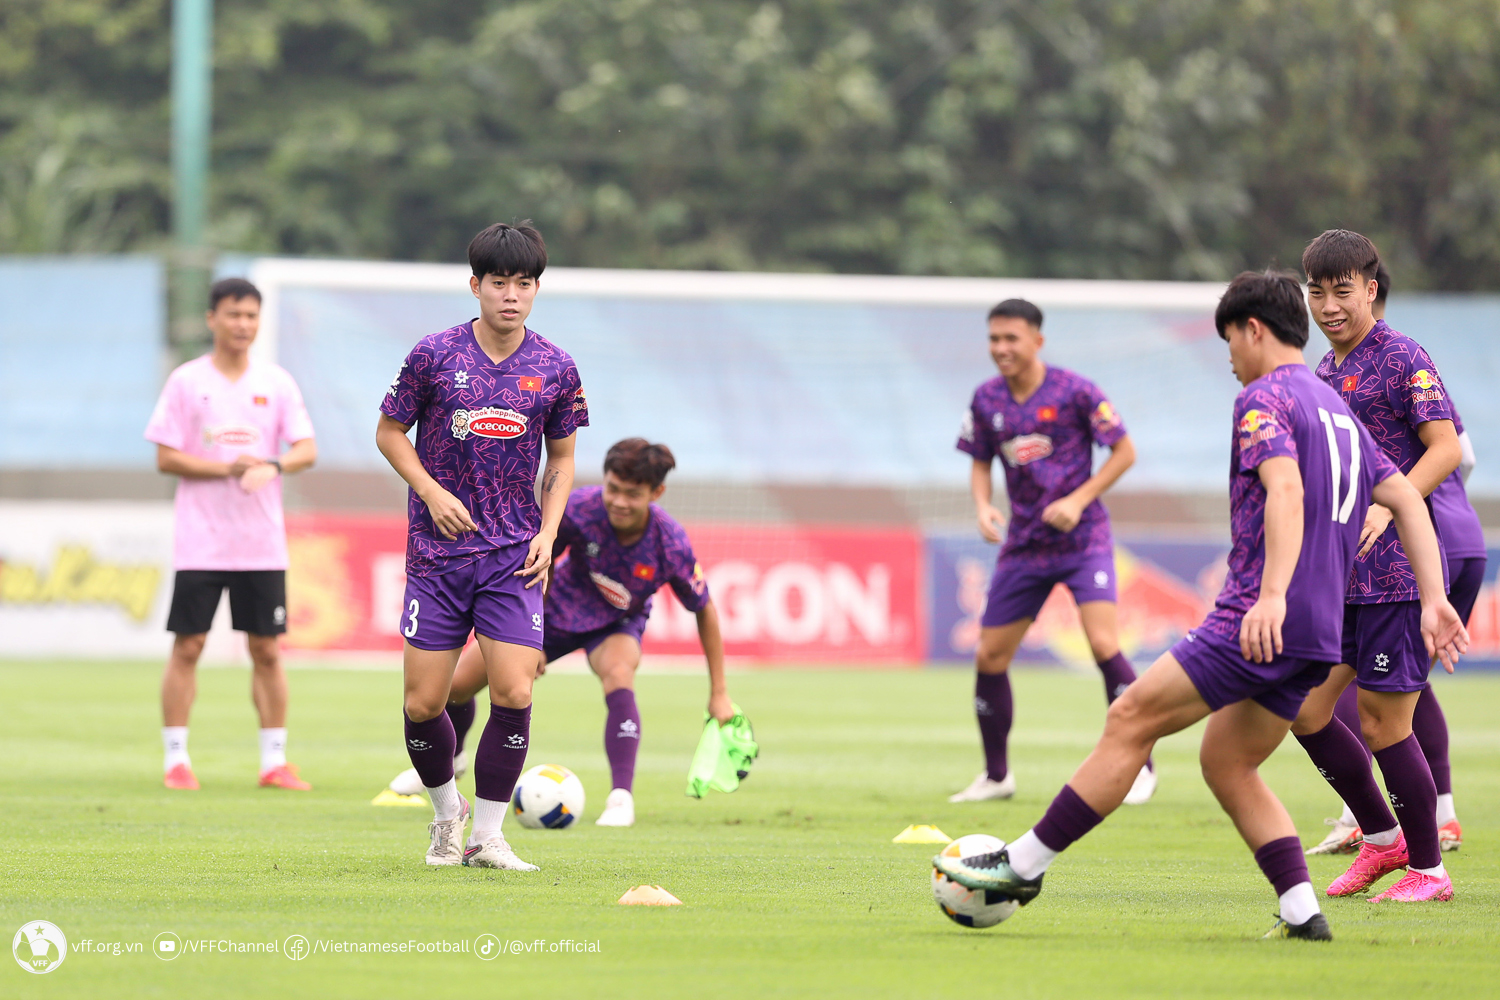 Đội tuyển U23 Việt Nam hào hứng bước vào buổi tập đầu tiên, chuẩn bị cho đấu trường châu Á